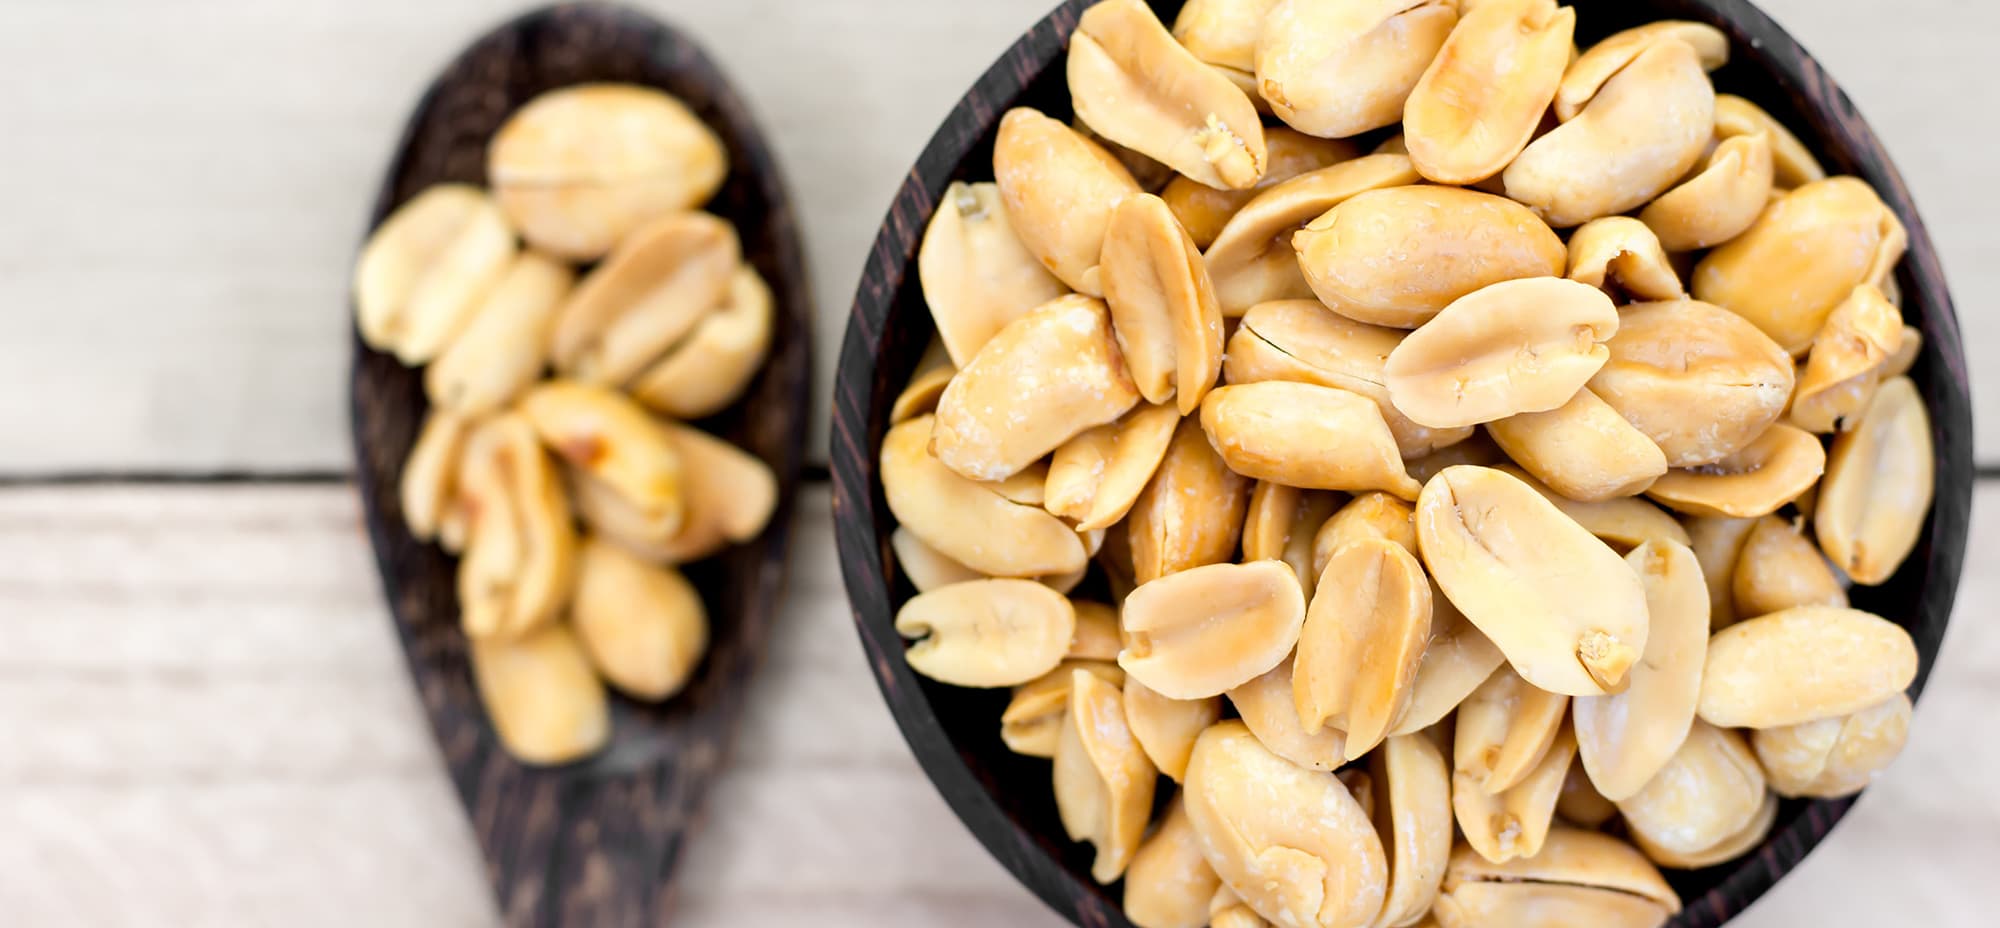 Cashew peanuts in a bowl